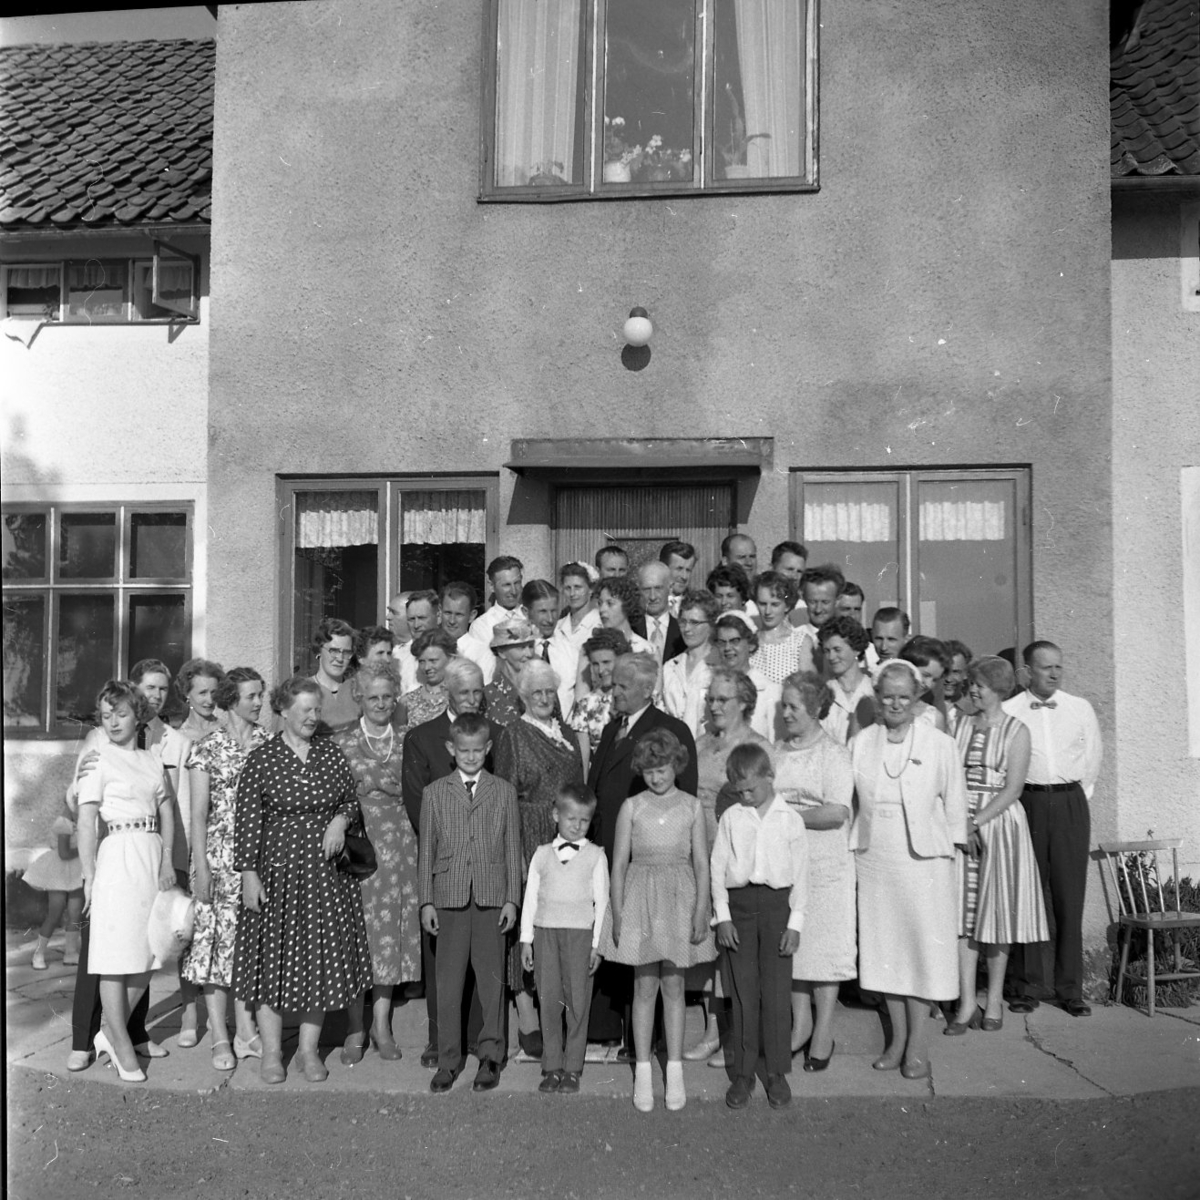 Släktmöte 1960. En stor skara människor, både barn och vuxna står uppställda framför ett hus med putsad fasad.